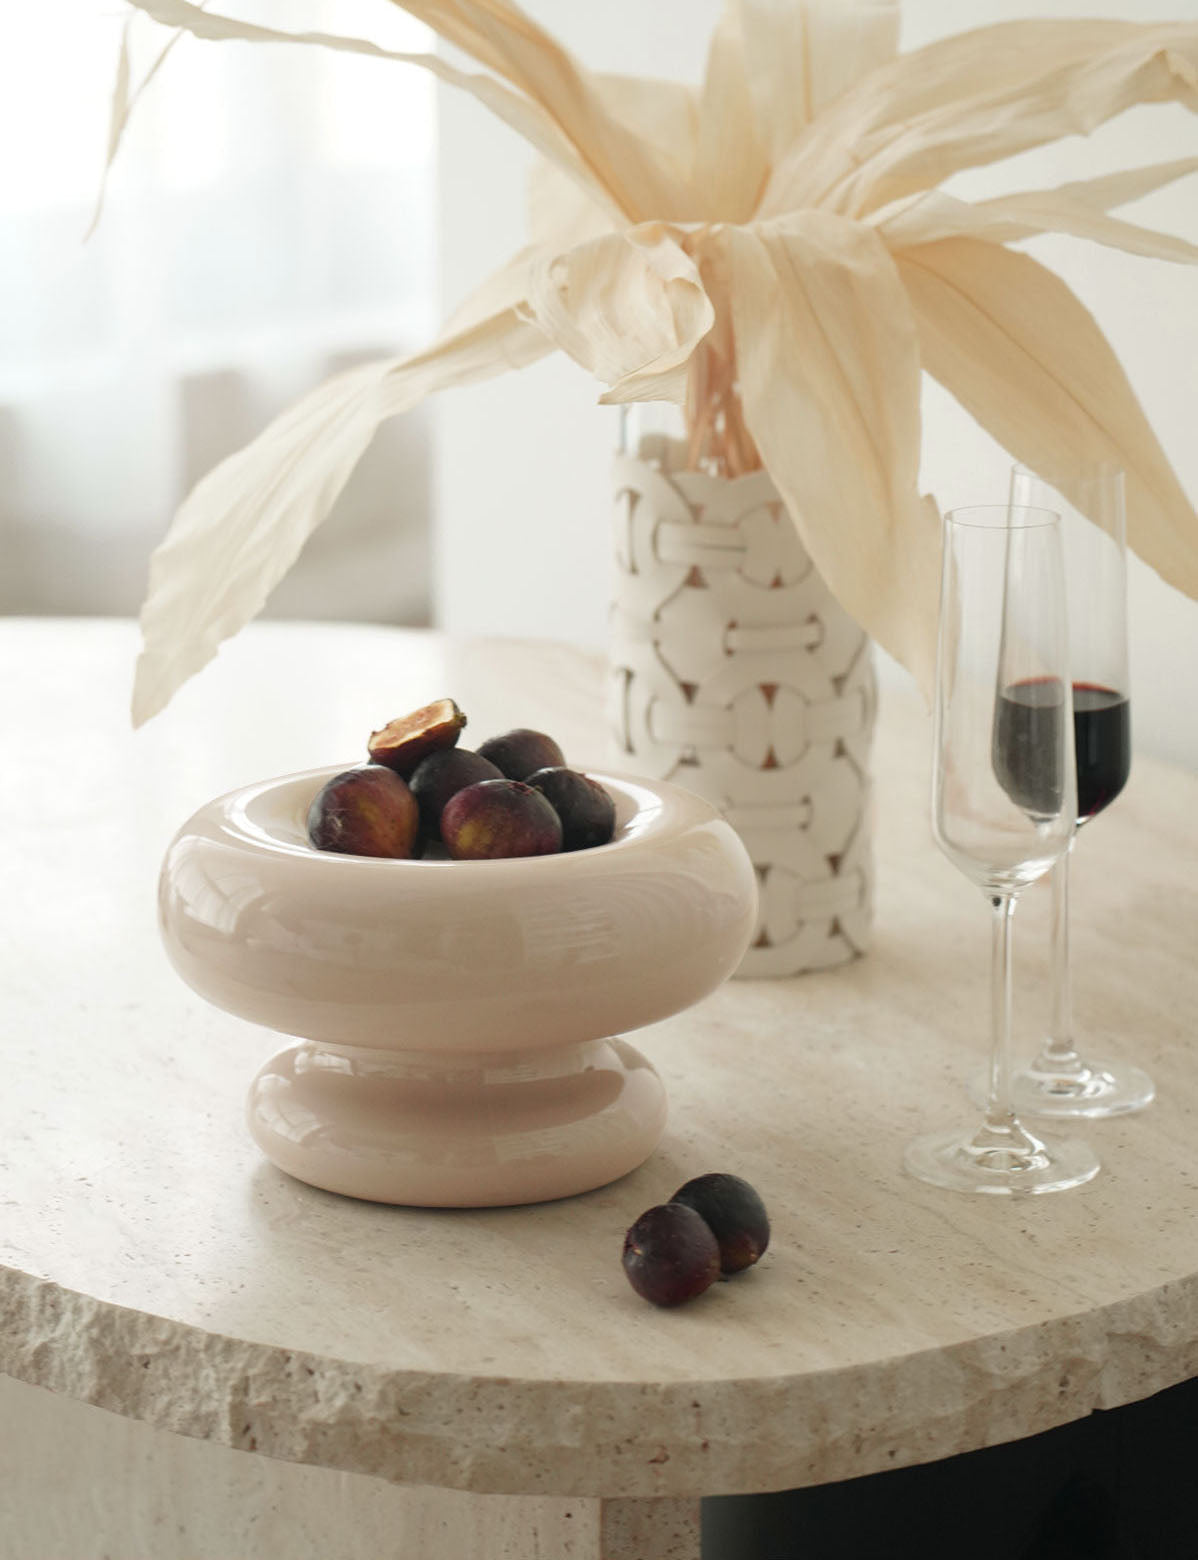 Glossy Marshmallow Ceramic Fruit Bowl from maija